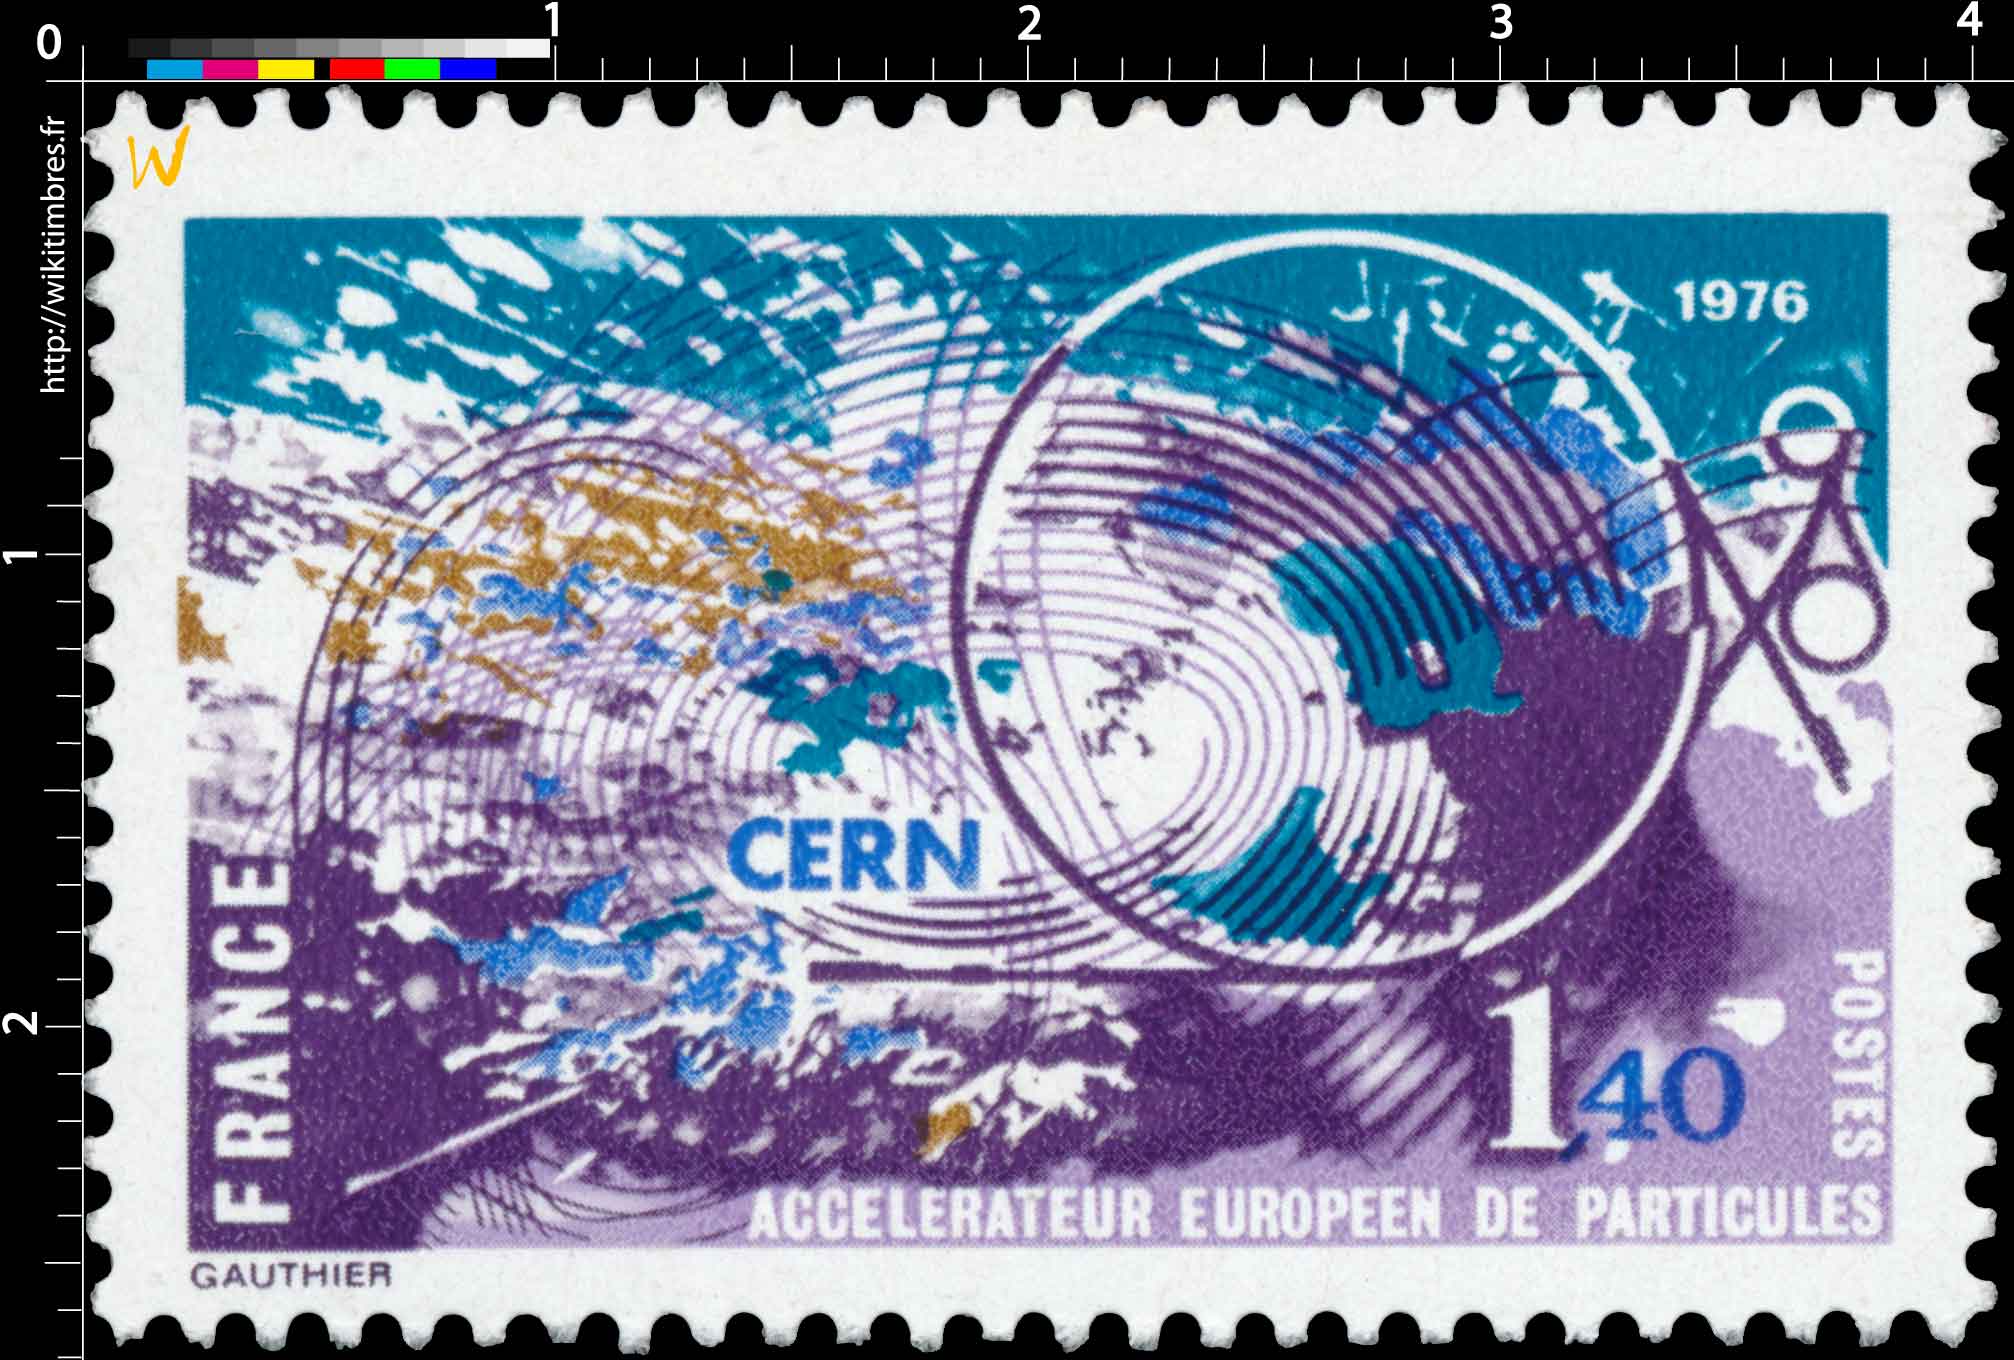 1976 CERN ACCÉLÉRATEUR EUROPÉEN DE PARTICULES